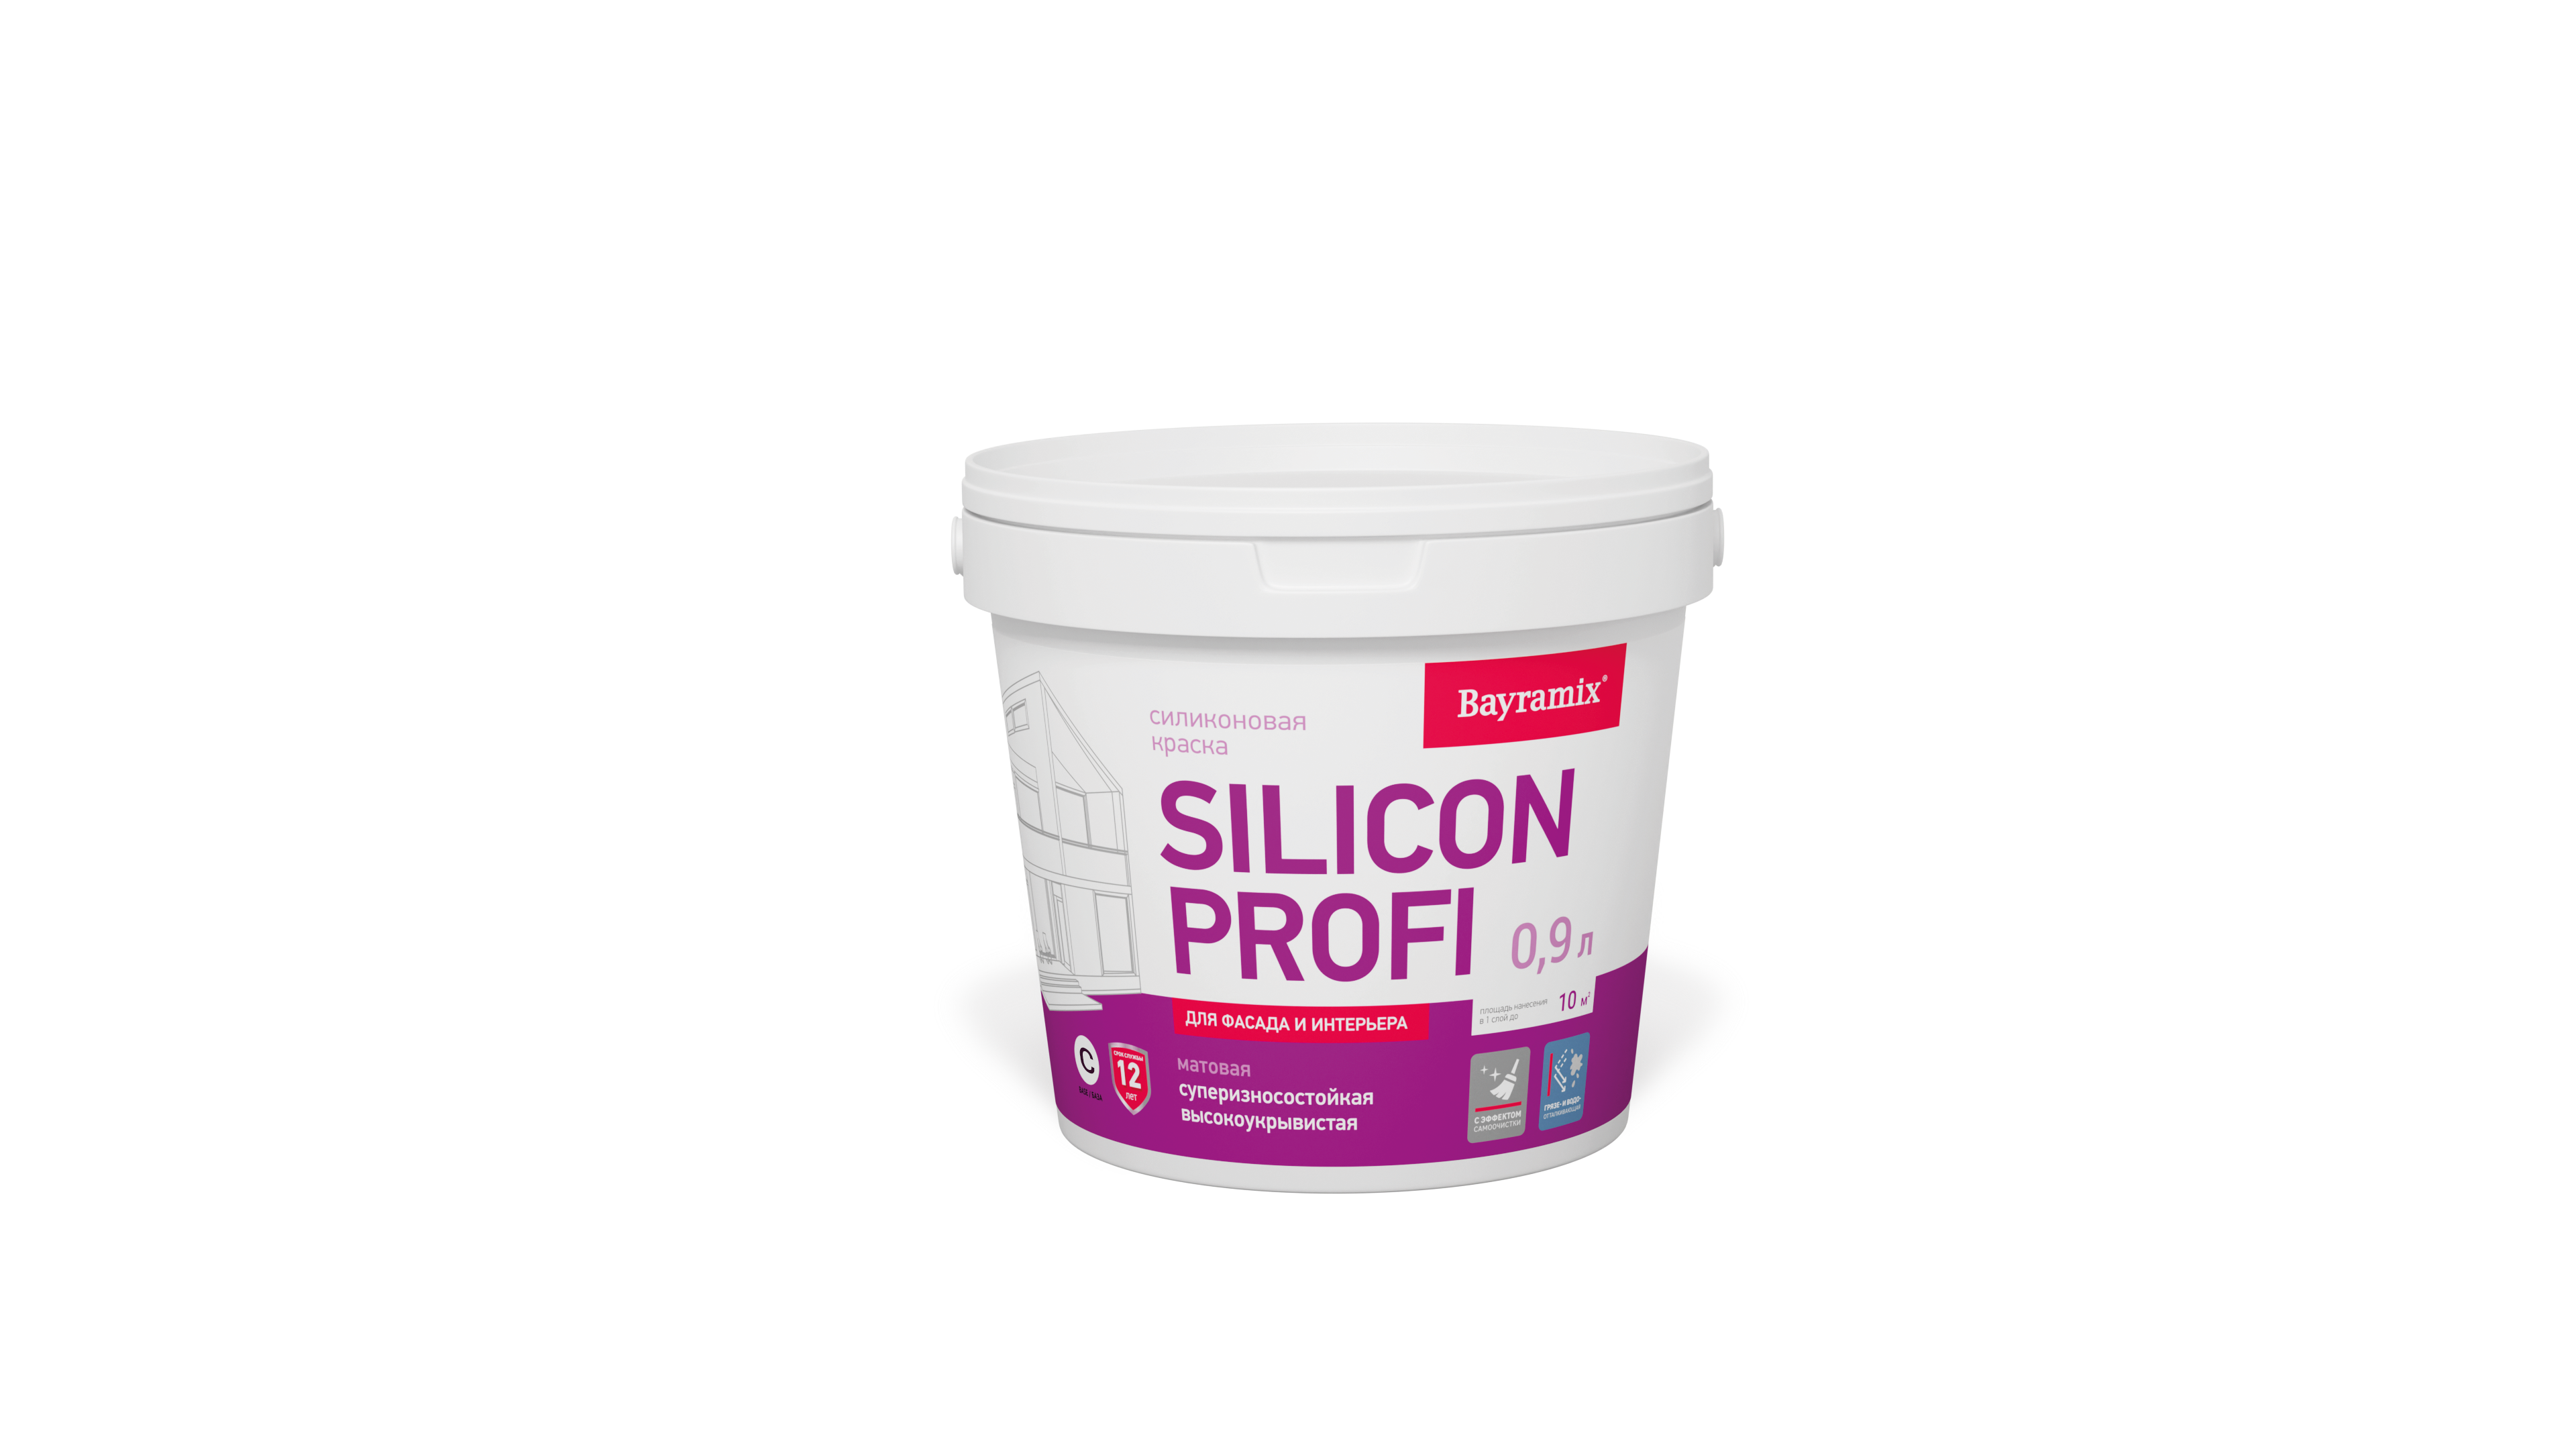 Краска фасадная, матовая Silicon Profi База C бесцветная 1,2 кг/0,9 л (только колеровка) краска фасадная caparol silicon farbe pro база 1 цвет белый 9 л